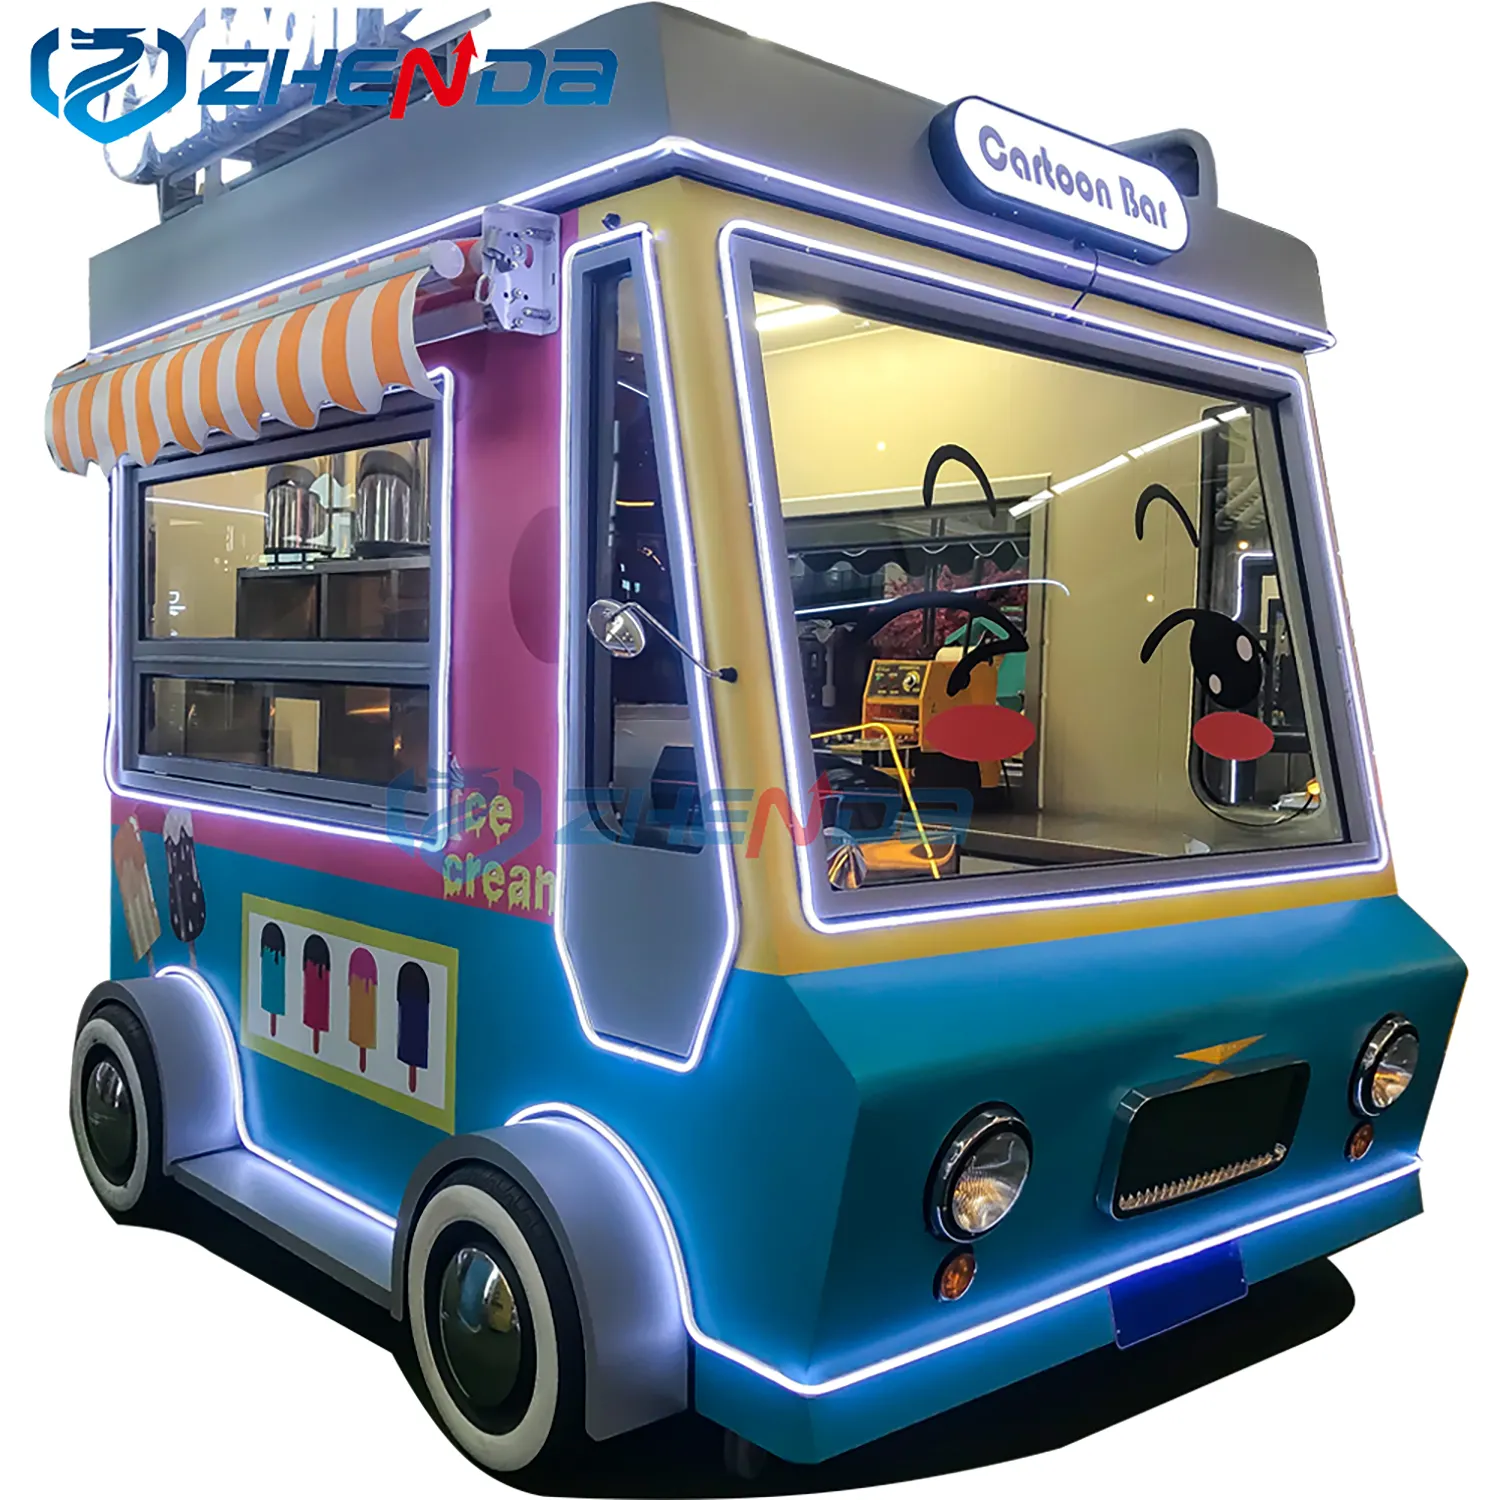 अंतरराष्ट्रीय प्रमाणित इलेक्ट्रिक खाद्य ट्रक बिक्री के लिए फैशन स्ट्रीट मोबाइल रसोई खाद्य ट्रक कस्टम खानपान स्वत: कियोस्क